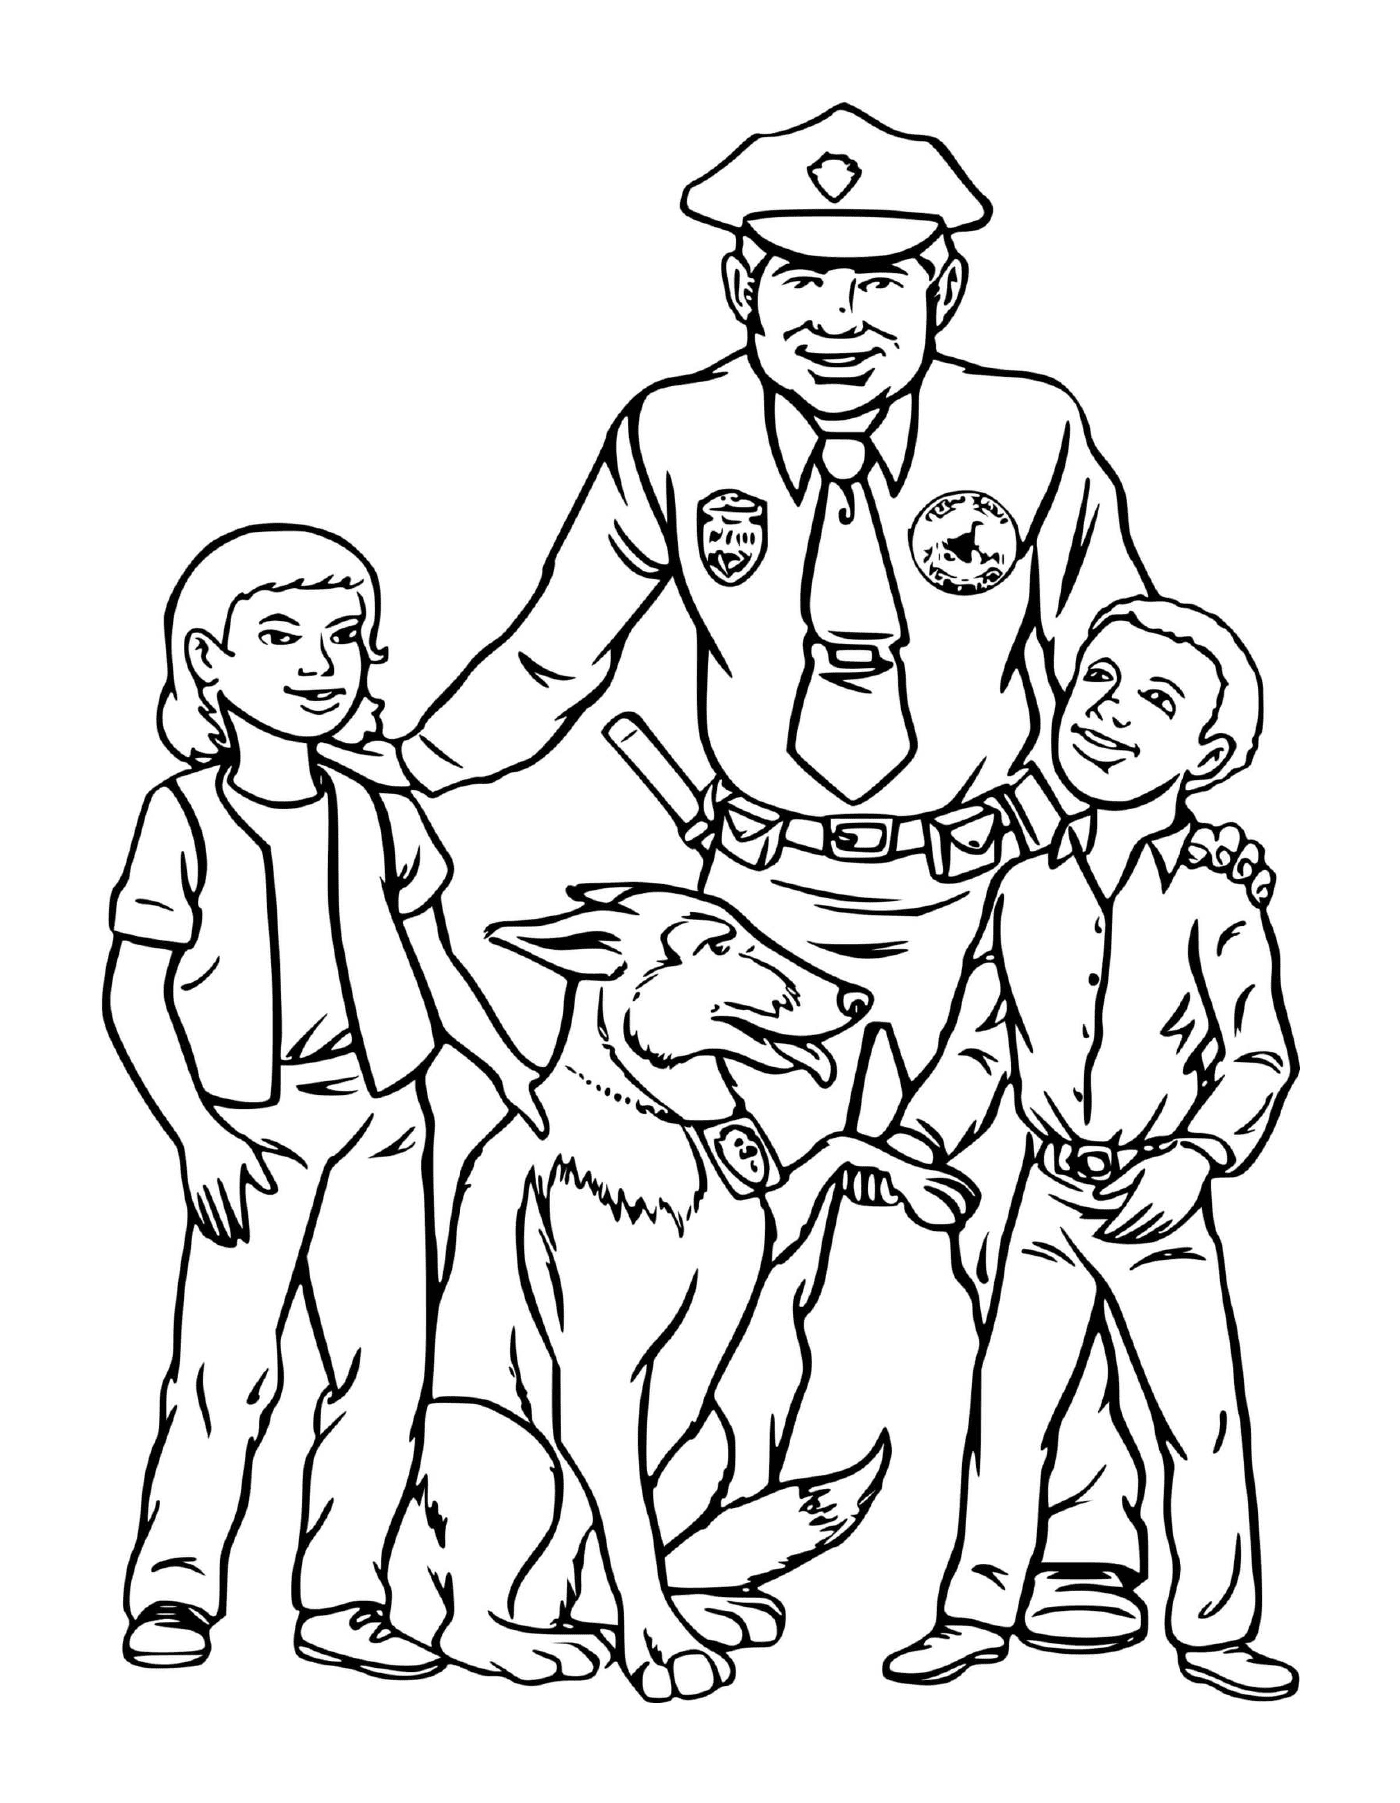  Полицейский, собака, присутствующие дети 